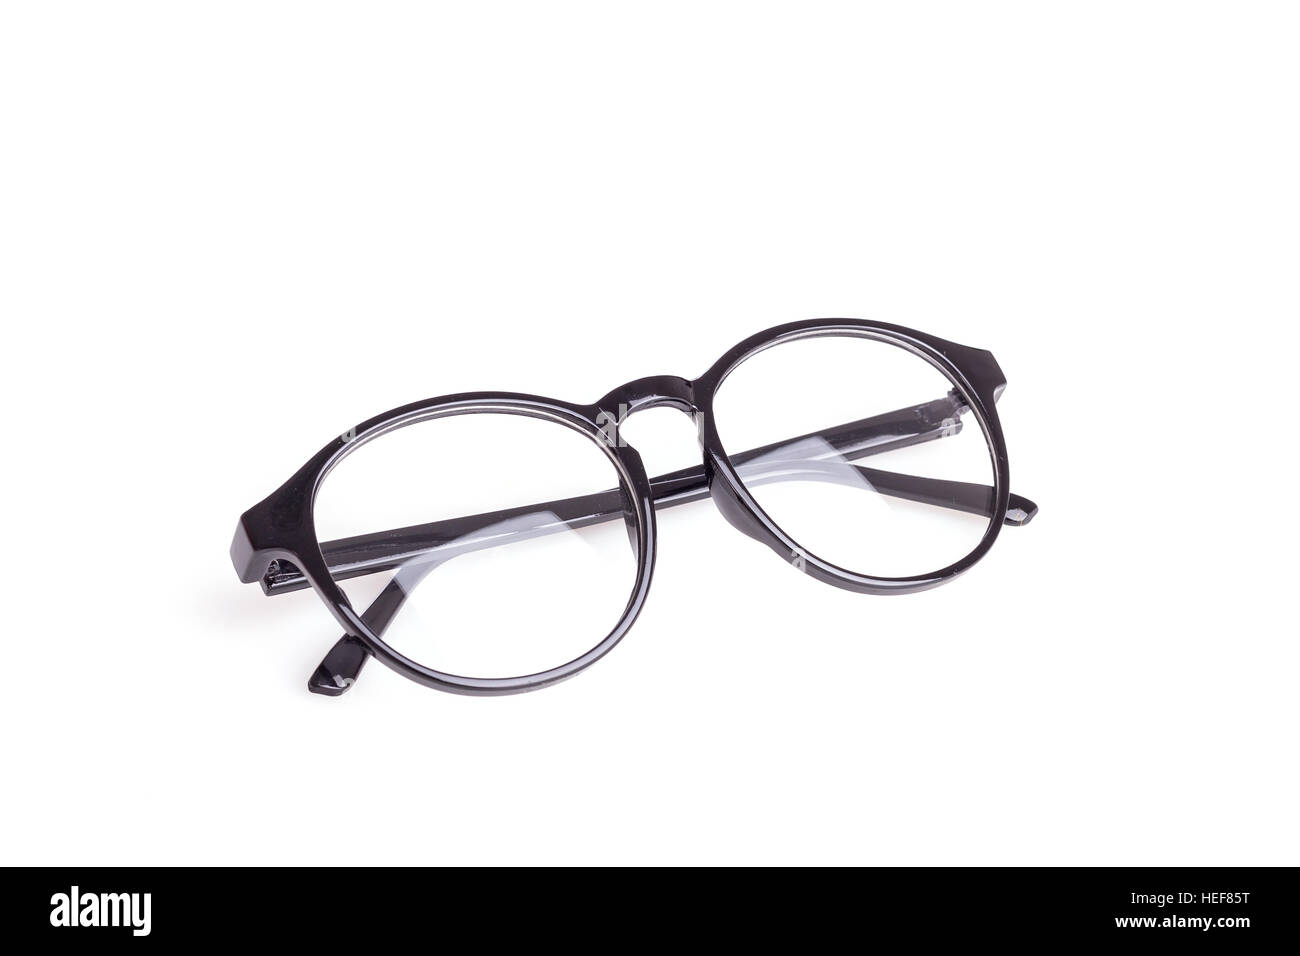 Close up black lunettes isolé sur fond blanc Banque D'Images